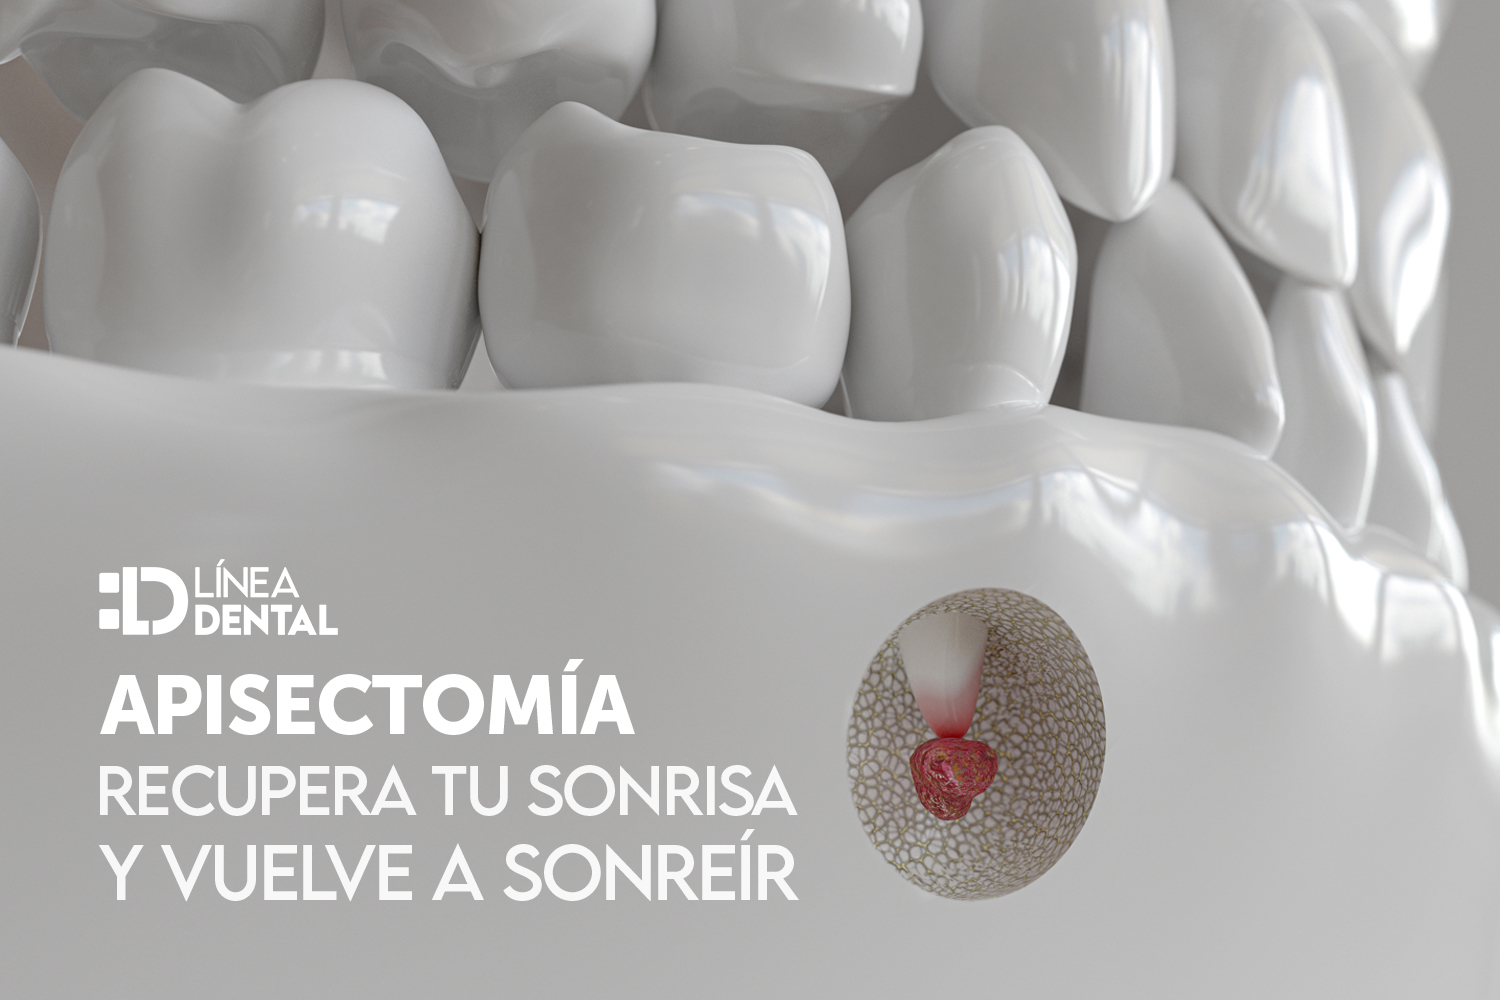 apisectomia-dentista-odontologo-linea-dental-ciudad-real-miguelturra